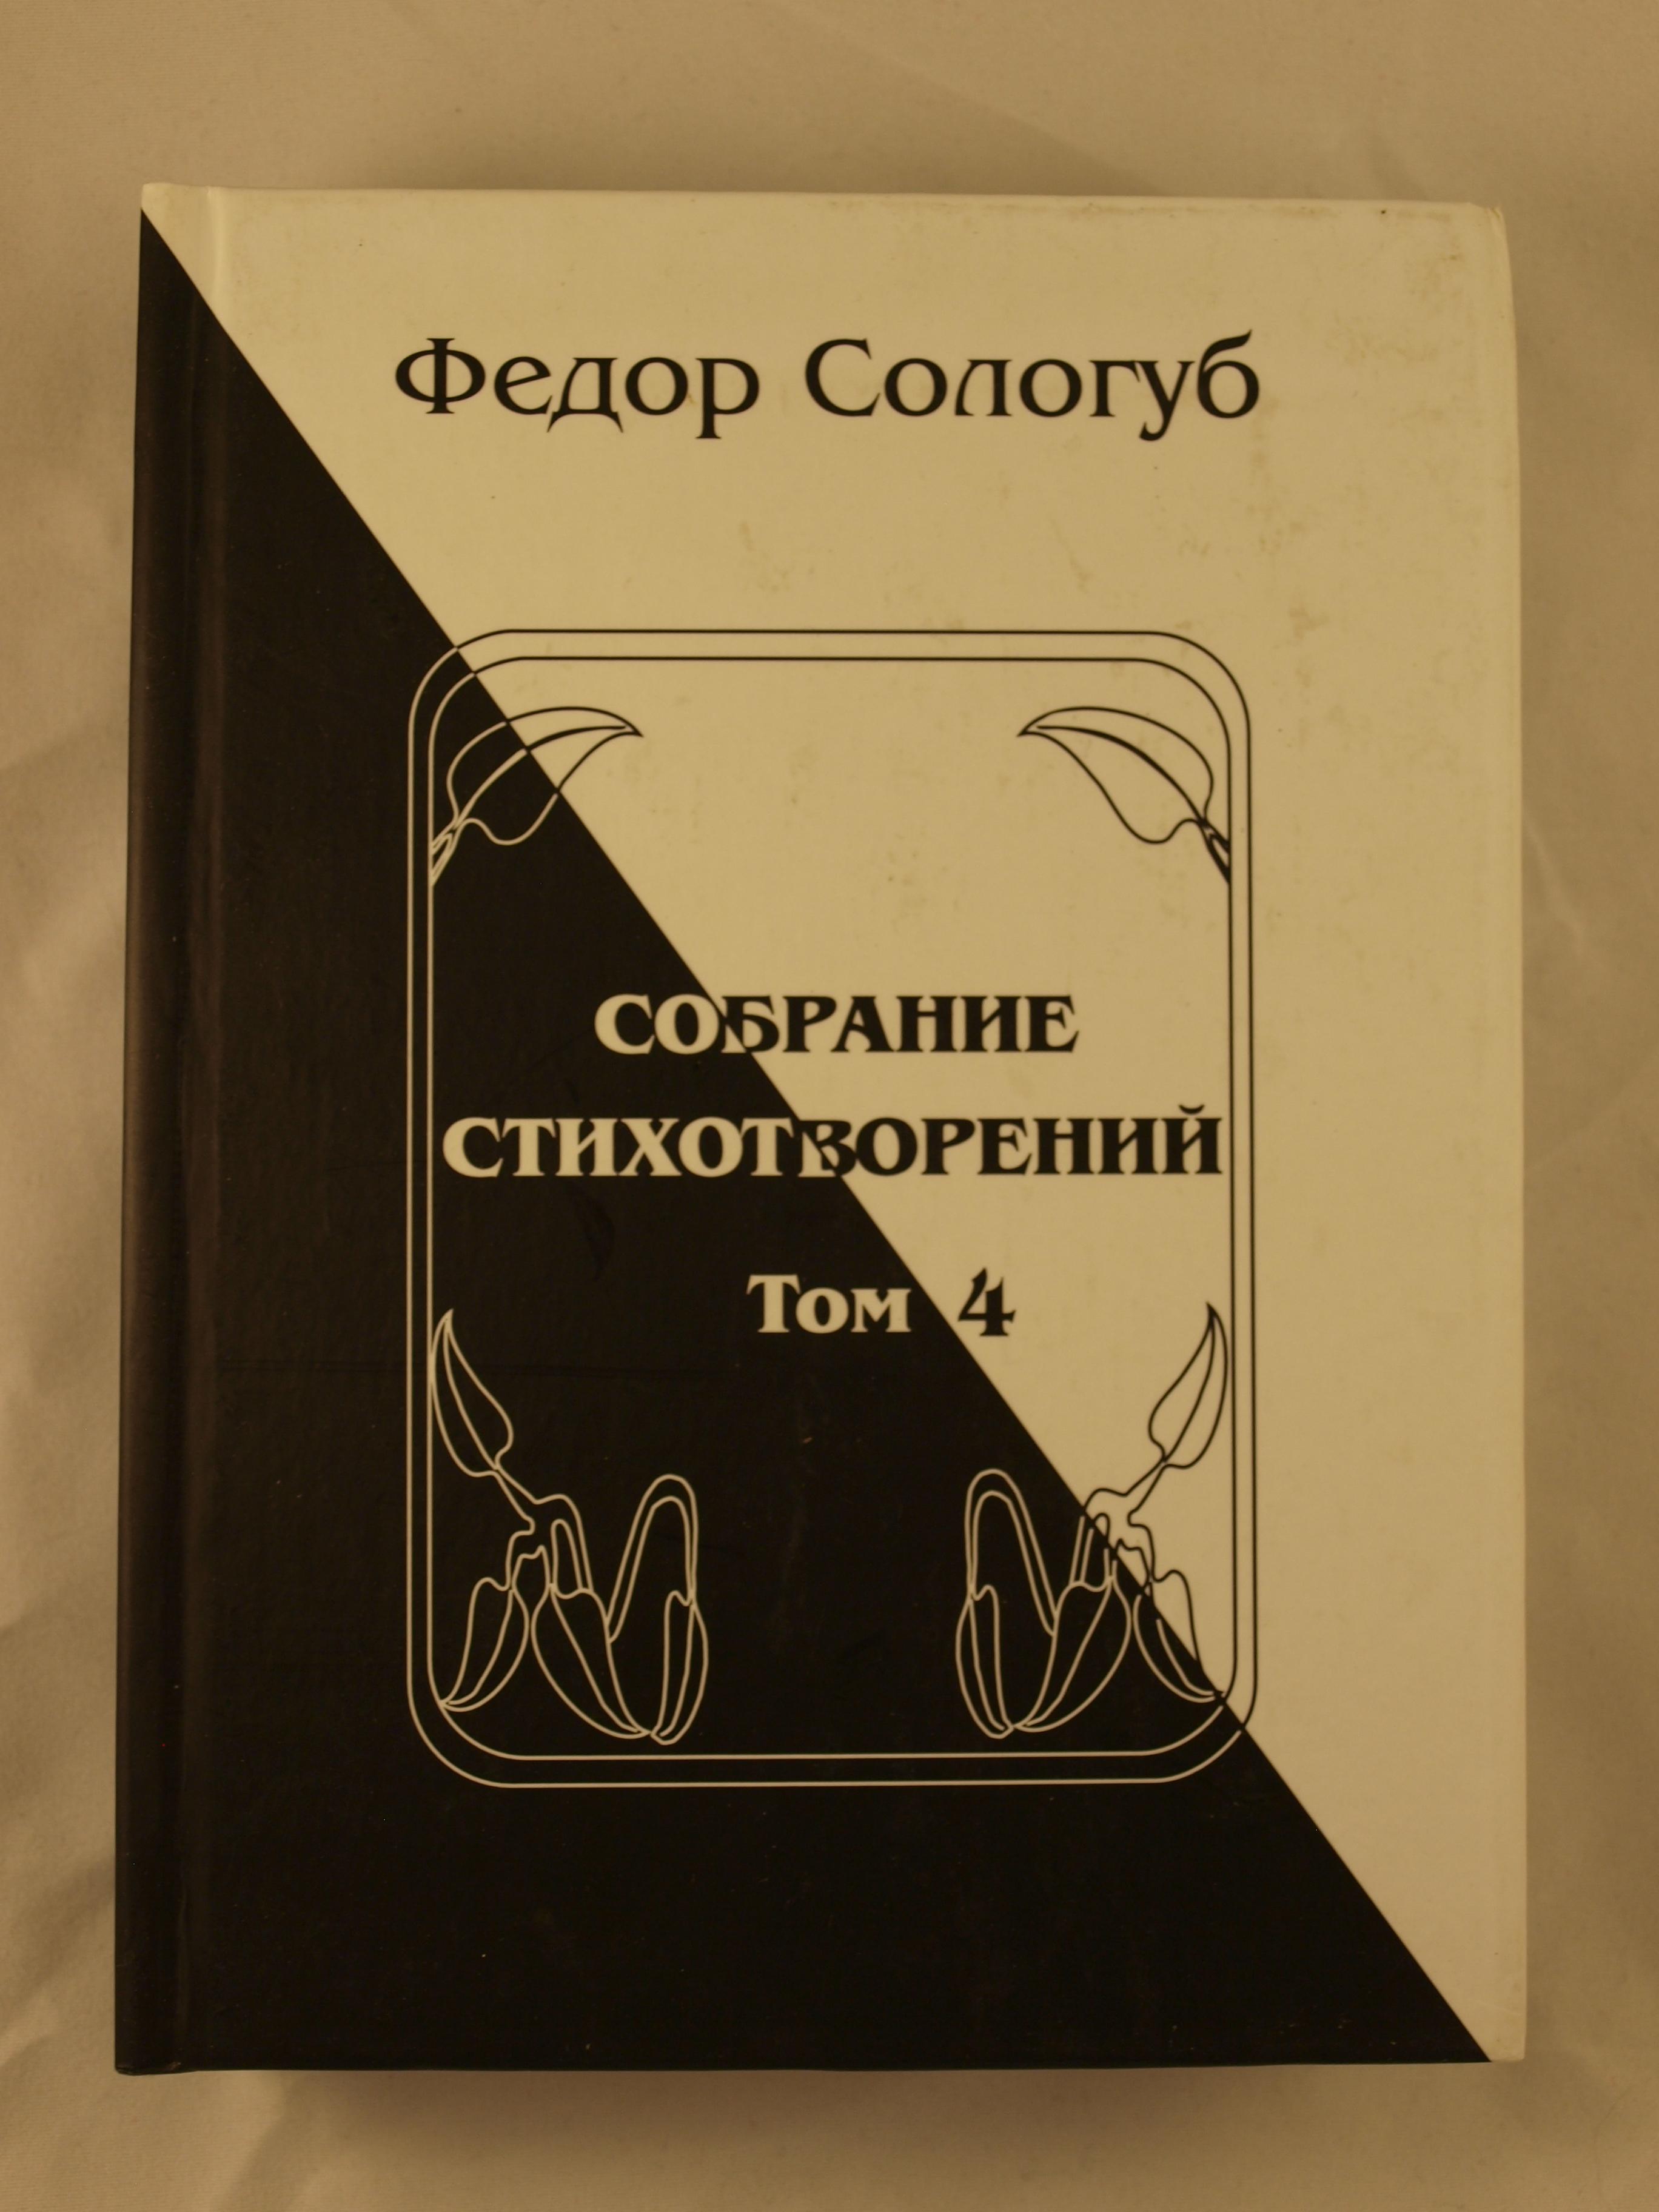 Собрание сочинений Федора Сологуба